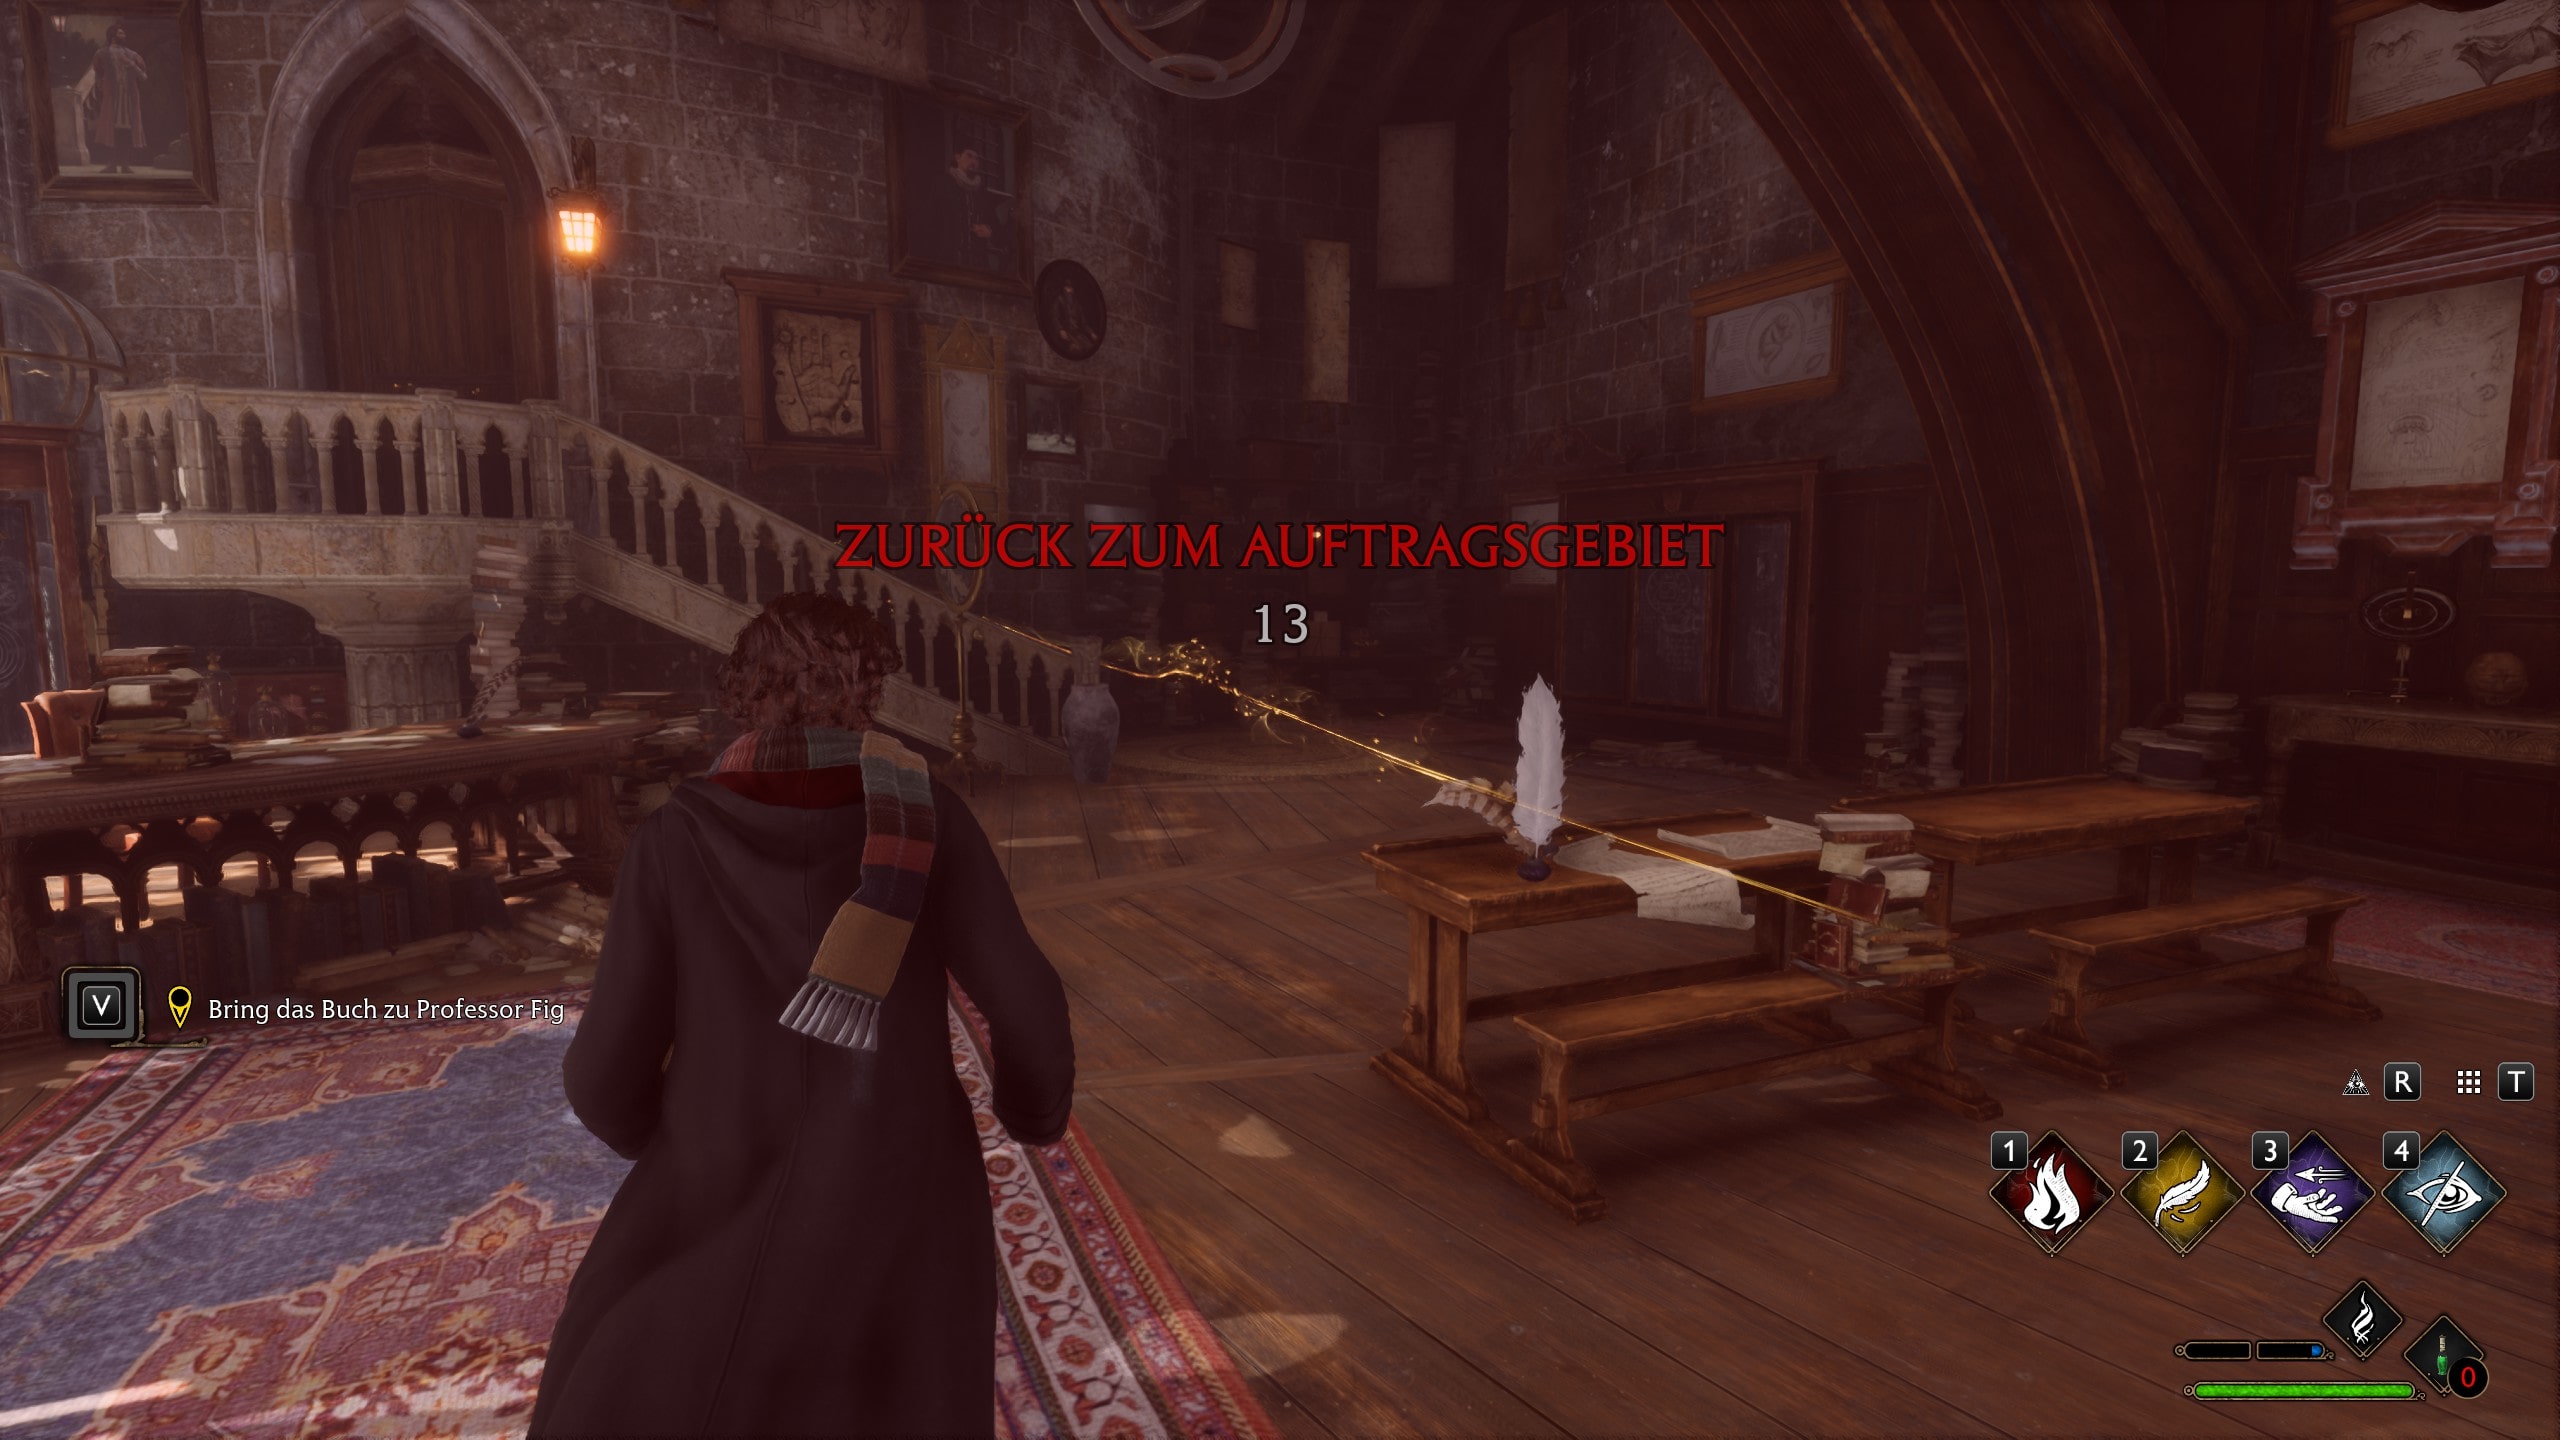 Dieser Screenshot von Hogwarts Legacy zeigt die Spielfigur, als sie das Auftragsgebiet kurz verlassen hat. Ein roter Filter liegt über dem Bild und eine Counter zählt herunter. In der Mitte in roter Schrift steht: ZURÜCK ZUM AUFTRAGSGEBIET